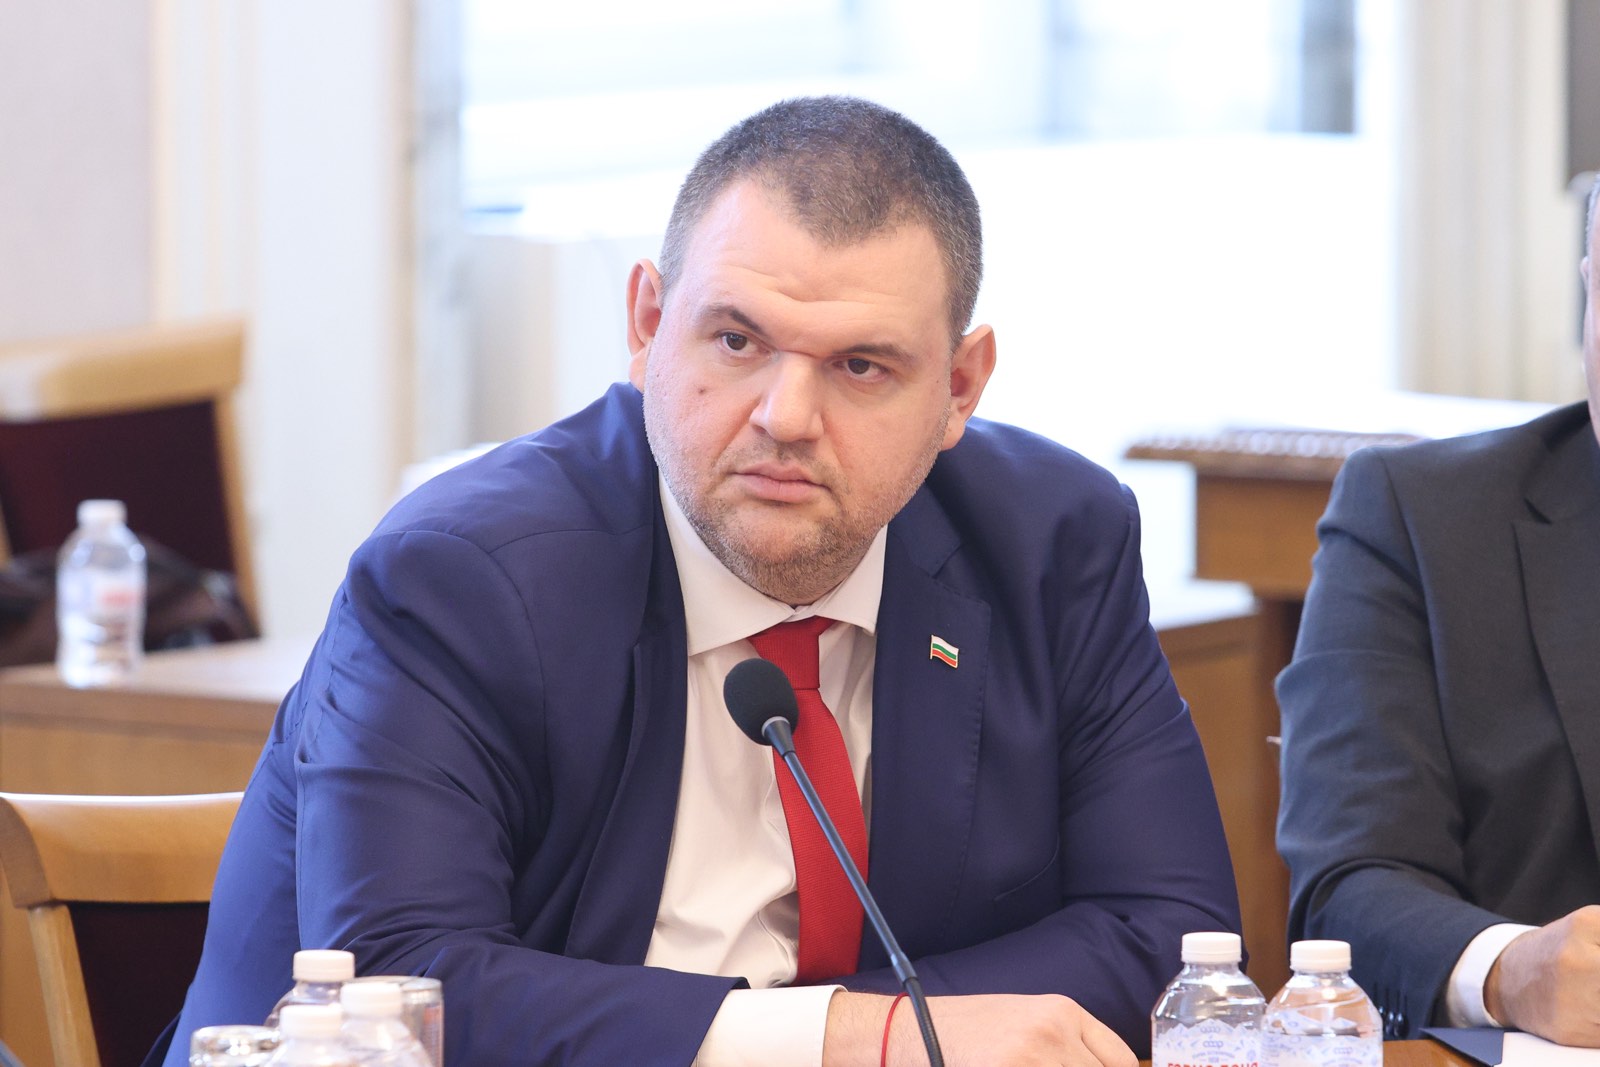 Пеевски избухна: “Лукойл” за пореден път демонстрира незачитане на българския парламент и законите. Незабавно контролните органи да…